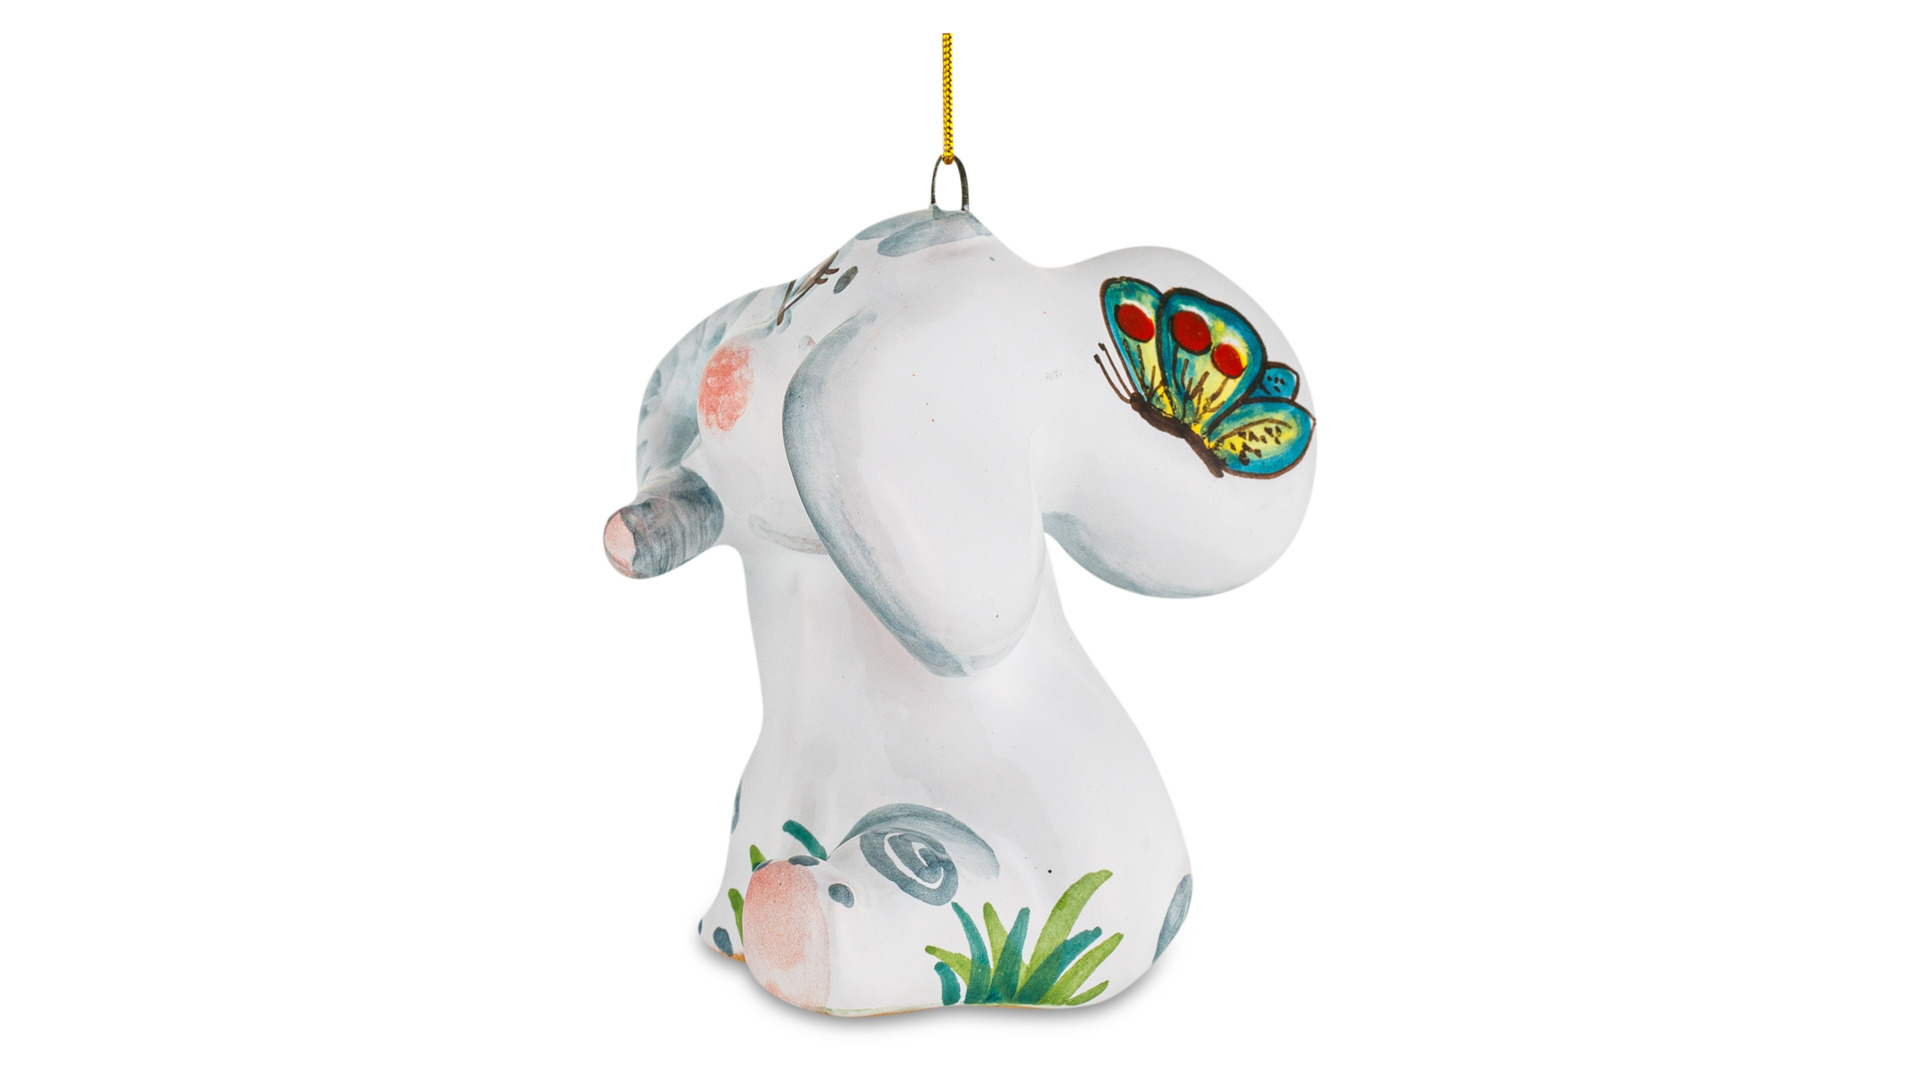 Игрушка елочная Ярославская майолика Слоненок 6 см, керамика